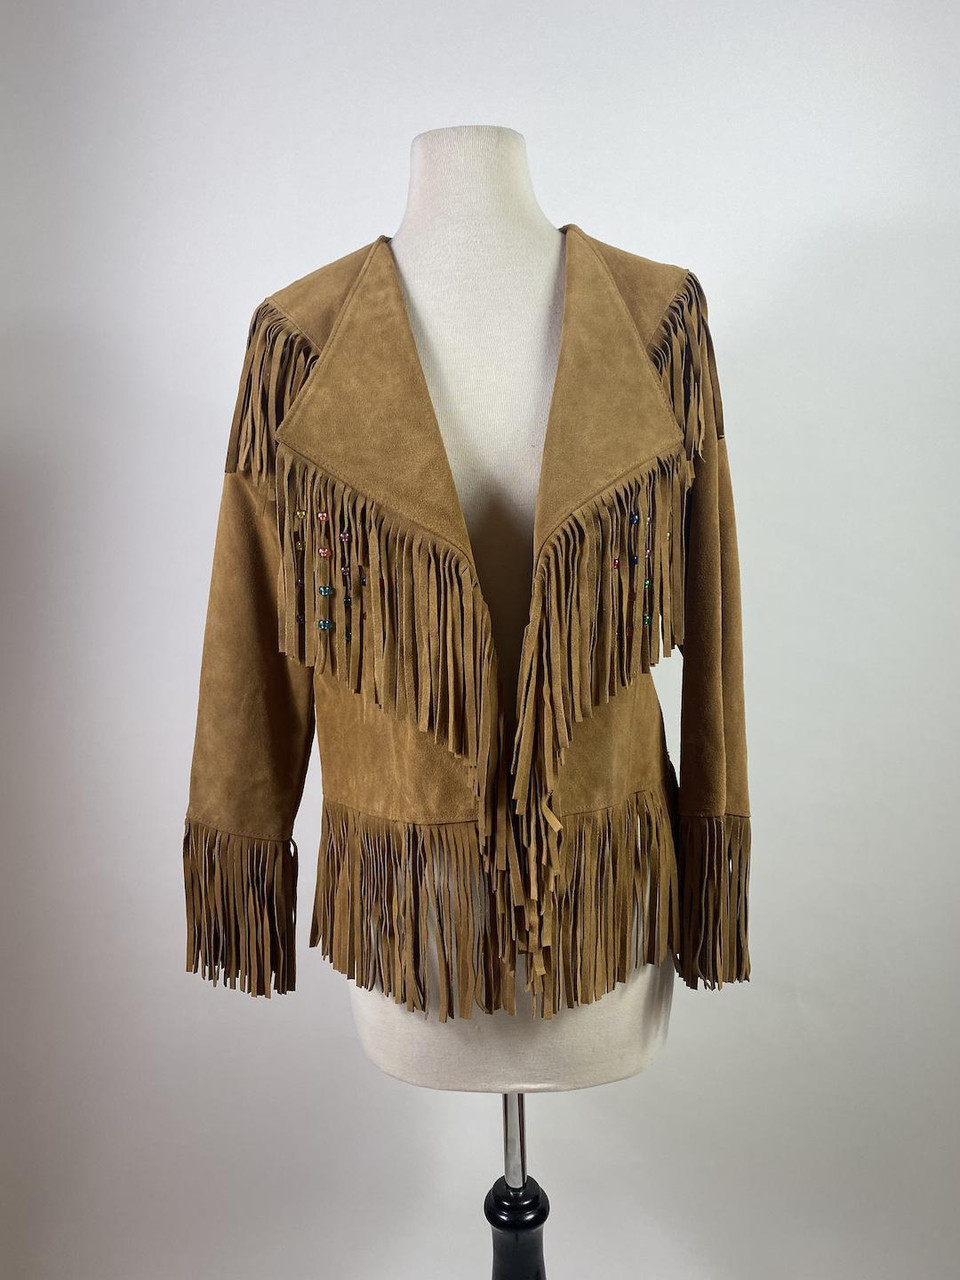 Vintage 70s - 80s Tan Suede Leather Fringe Jacket - Paper Doll